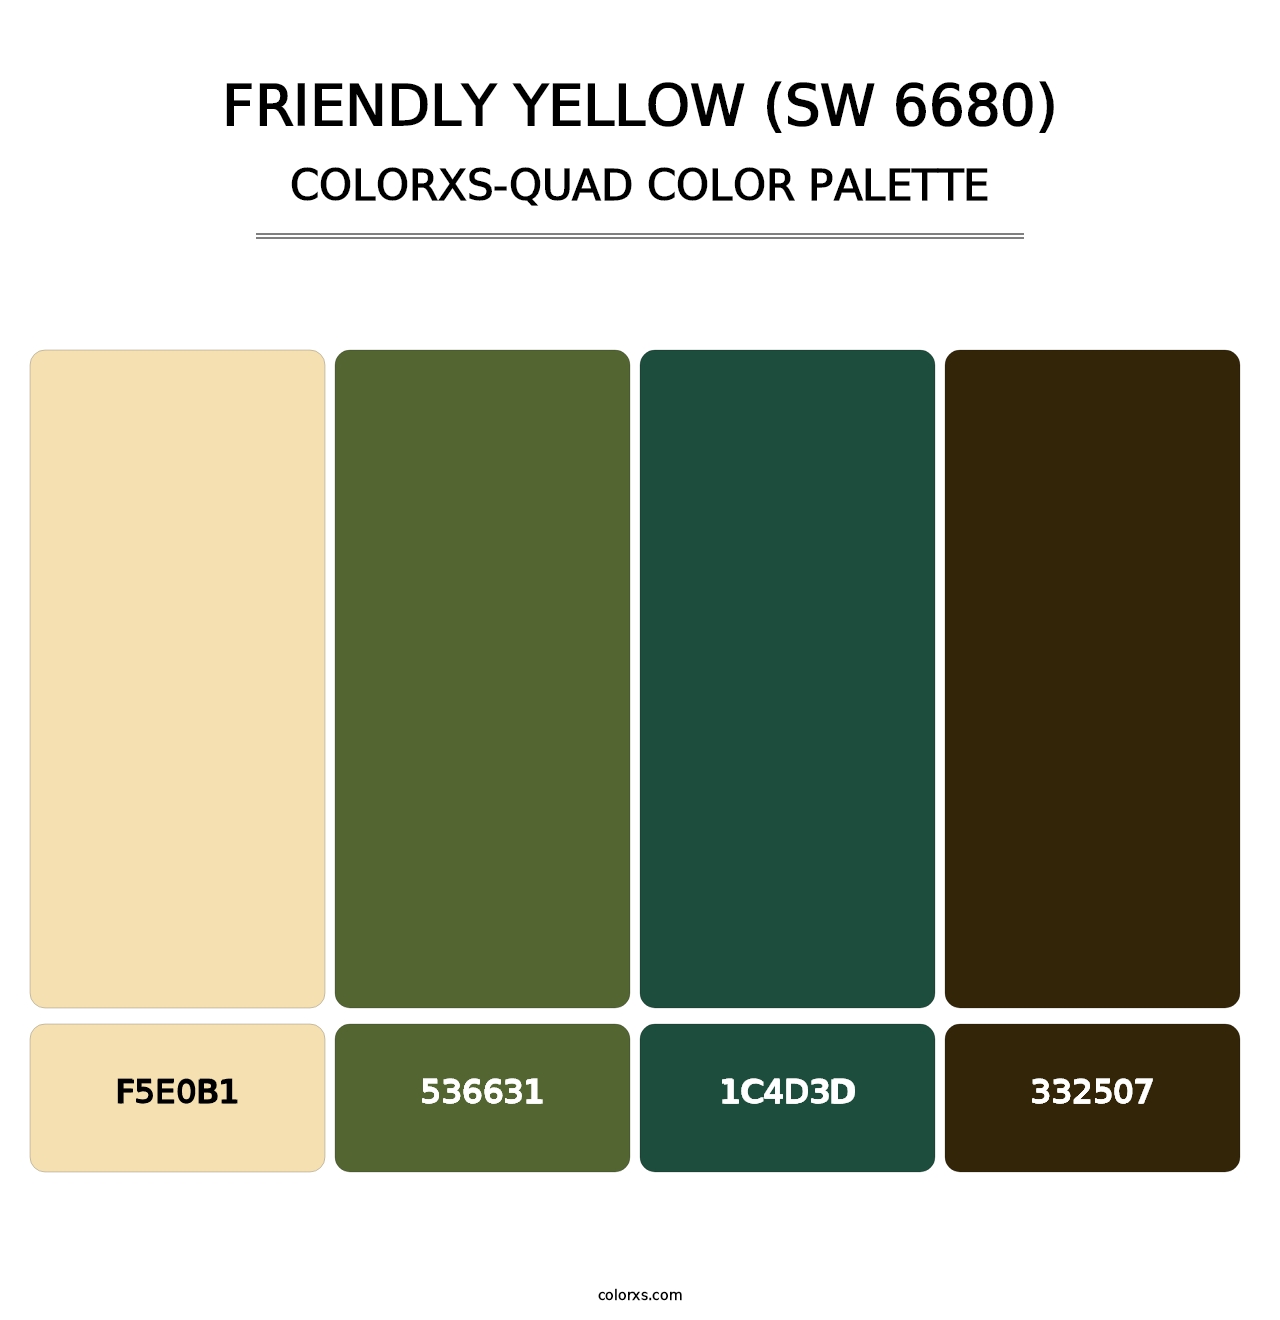 Friendly Yellow (SW 6680) - Colorxs Quad Palette